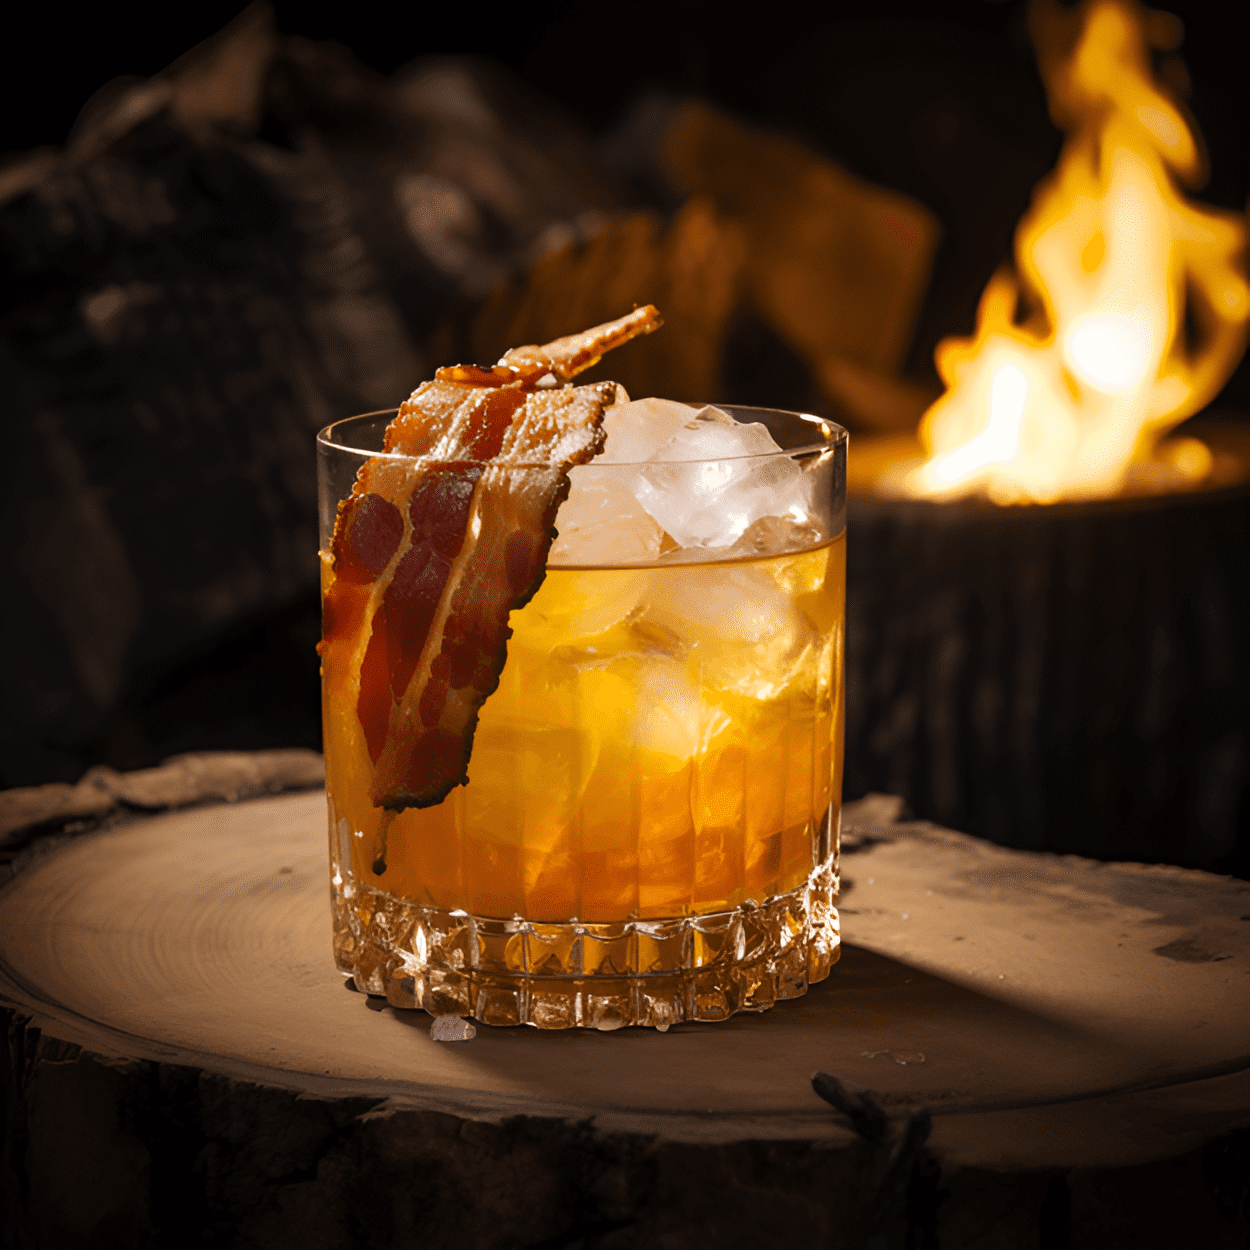 Lumberjack Cóctel Receta - El cóctel Lumberjack es una bebida audaz y robusta con un fuerte sabor a whisky. Tiene un toque de dulzura del jarabe de arce y un ligero toque de limón. El cóctel es de cuerpo completo, con un final cálido y persistente.